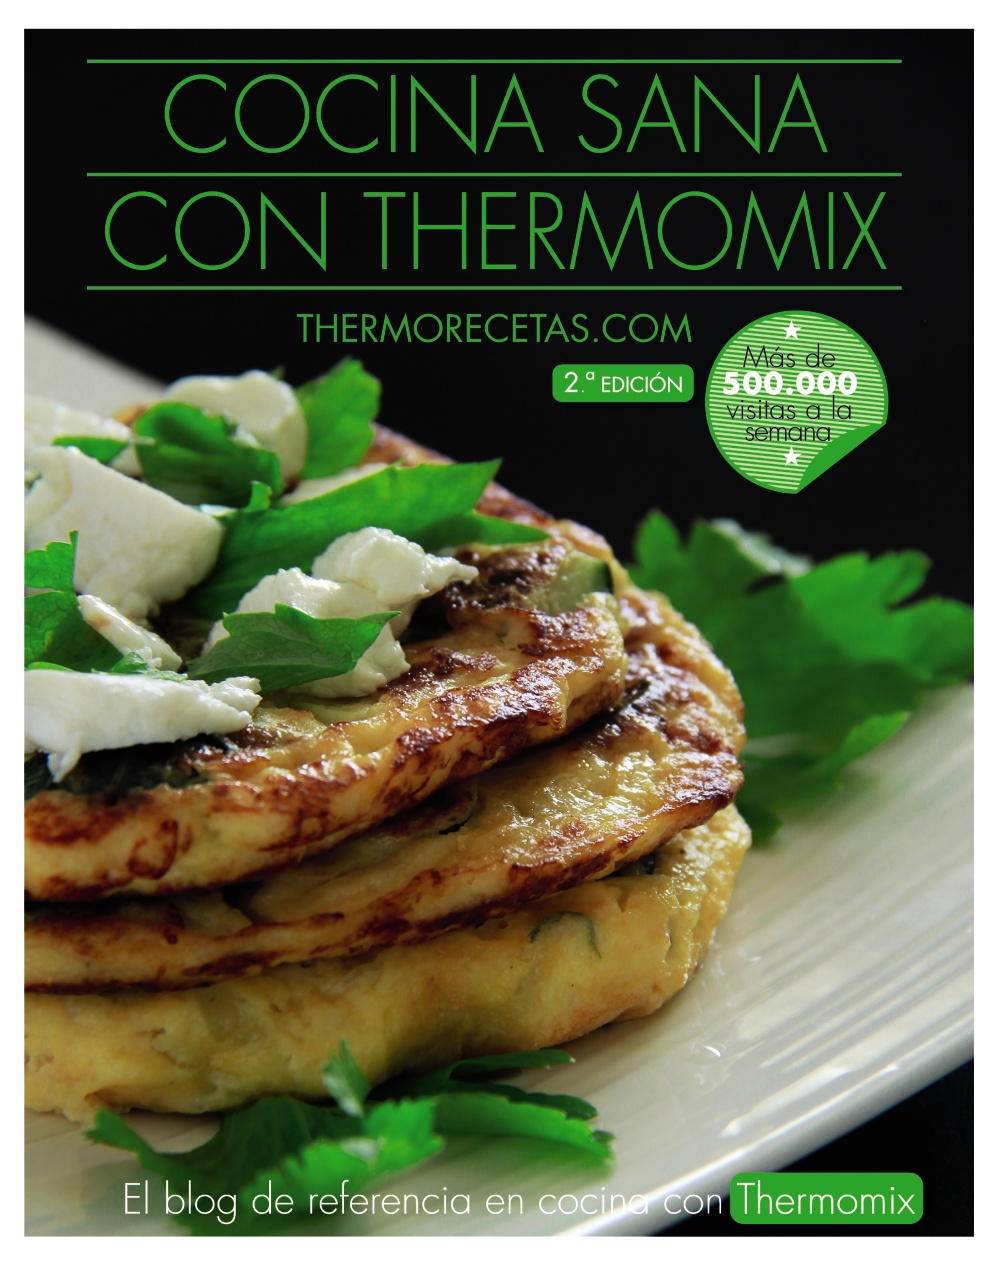 cocina-sana-con-thermomix-978-84-415-3845-0.jpg